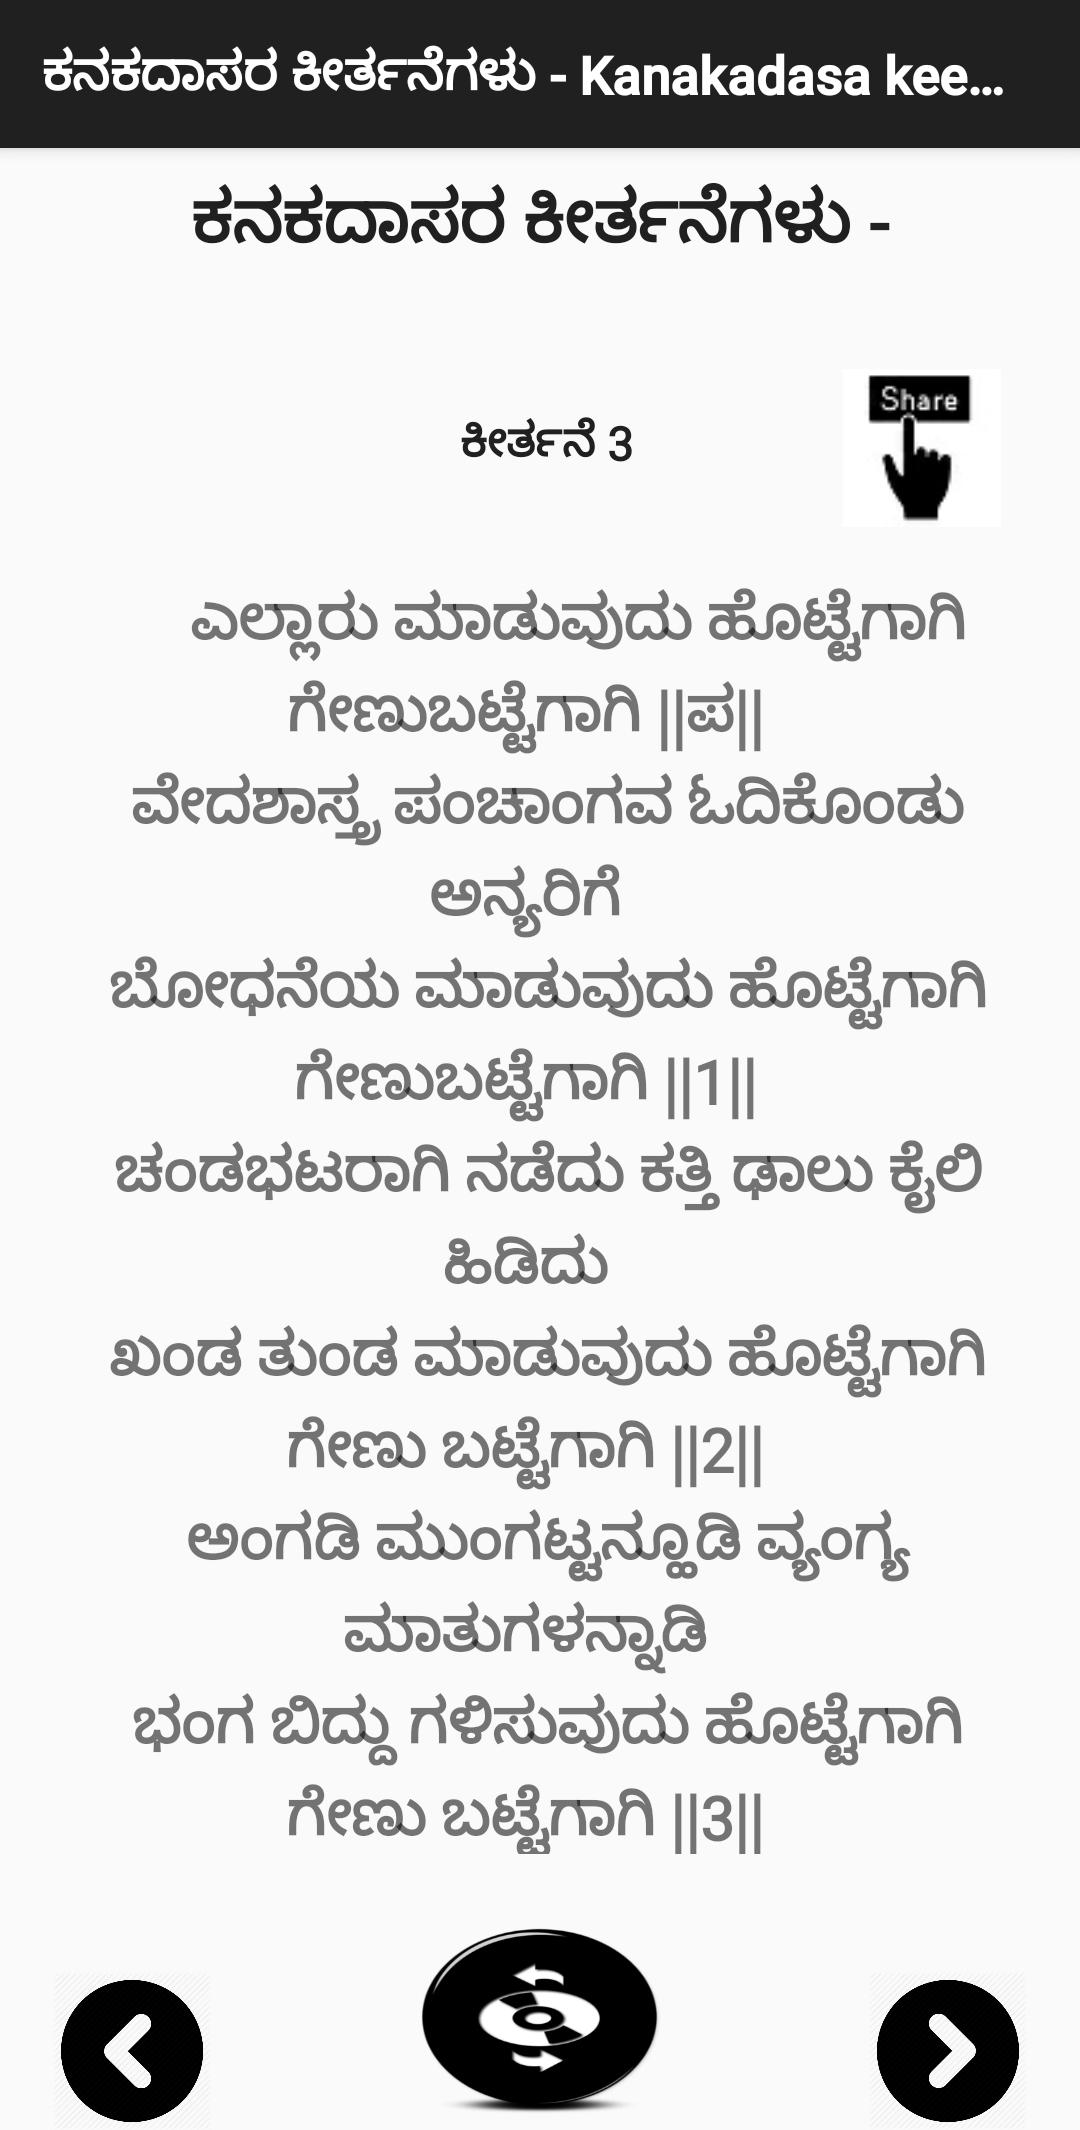 ಕನಕದಾಸರ ಕೀರ್ತನೆಗಳು - Kanakadasa Keerthane songs 3.0 Screenshot 3